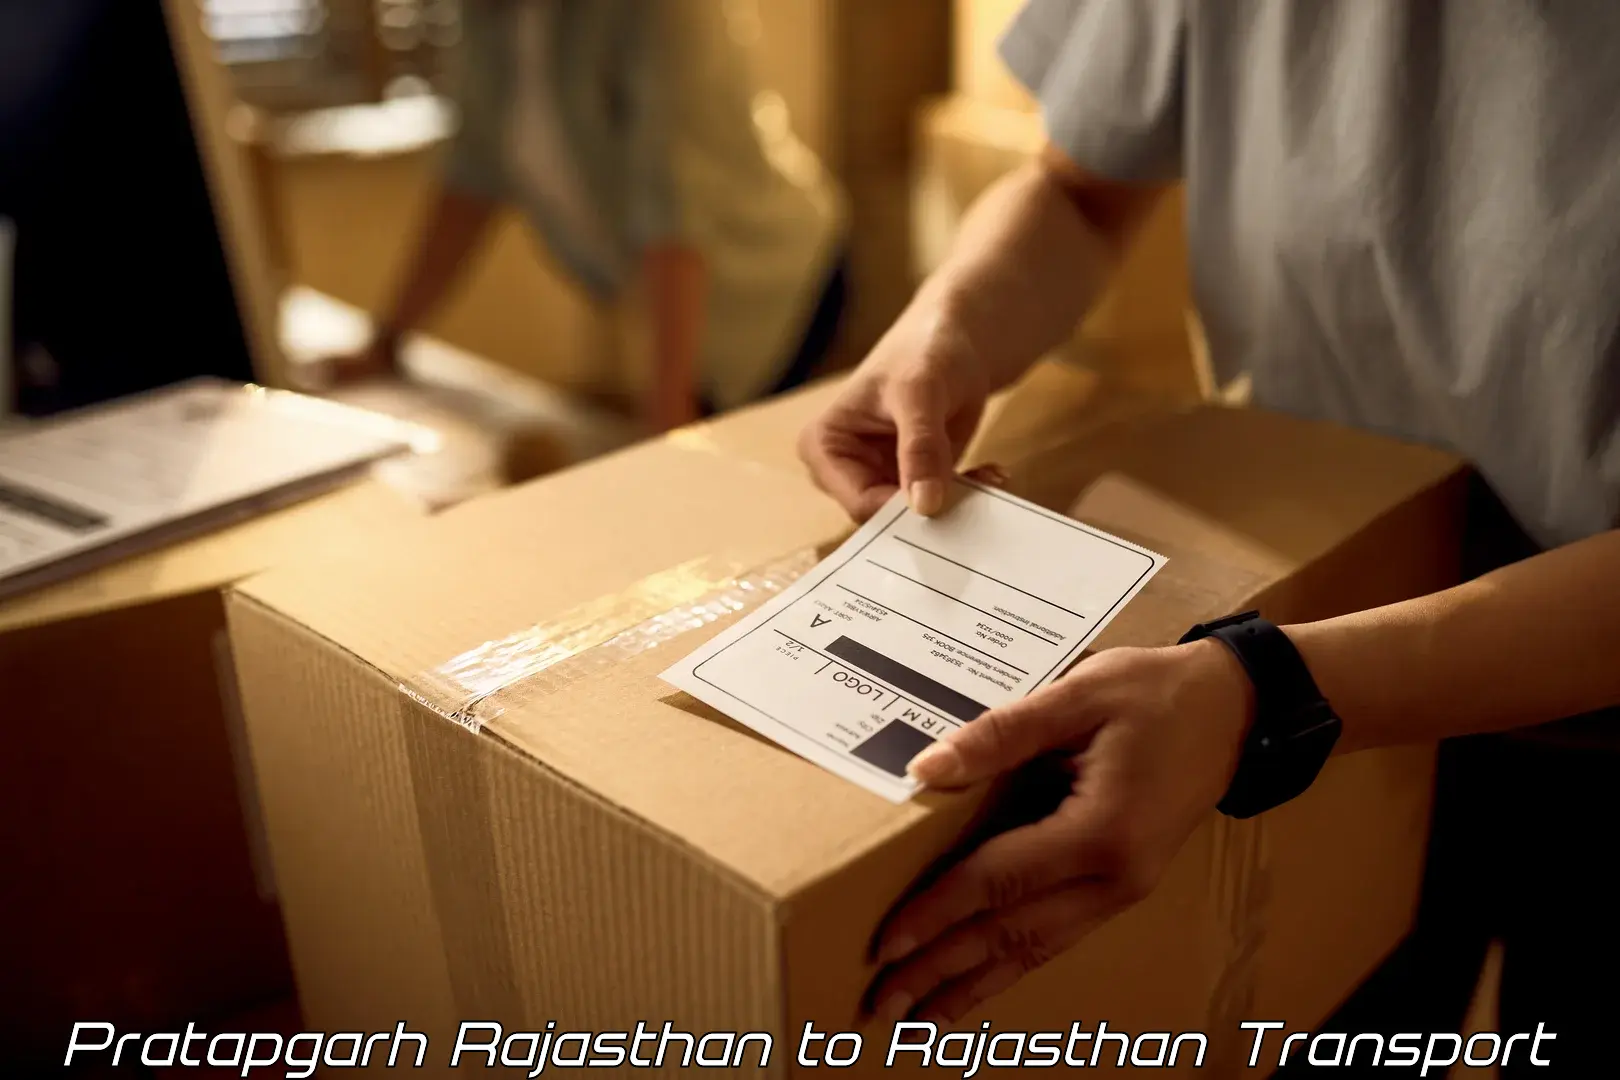 Furniture transport service Pratapgarh Rajasthan to Ras Pali